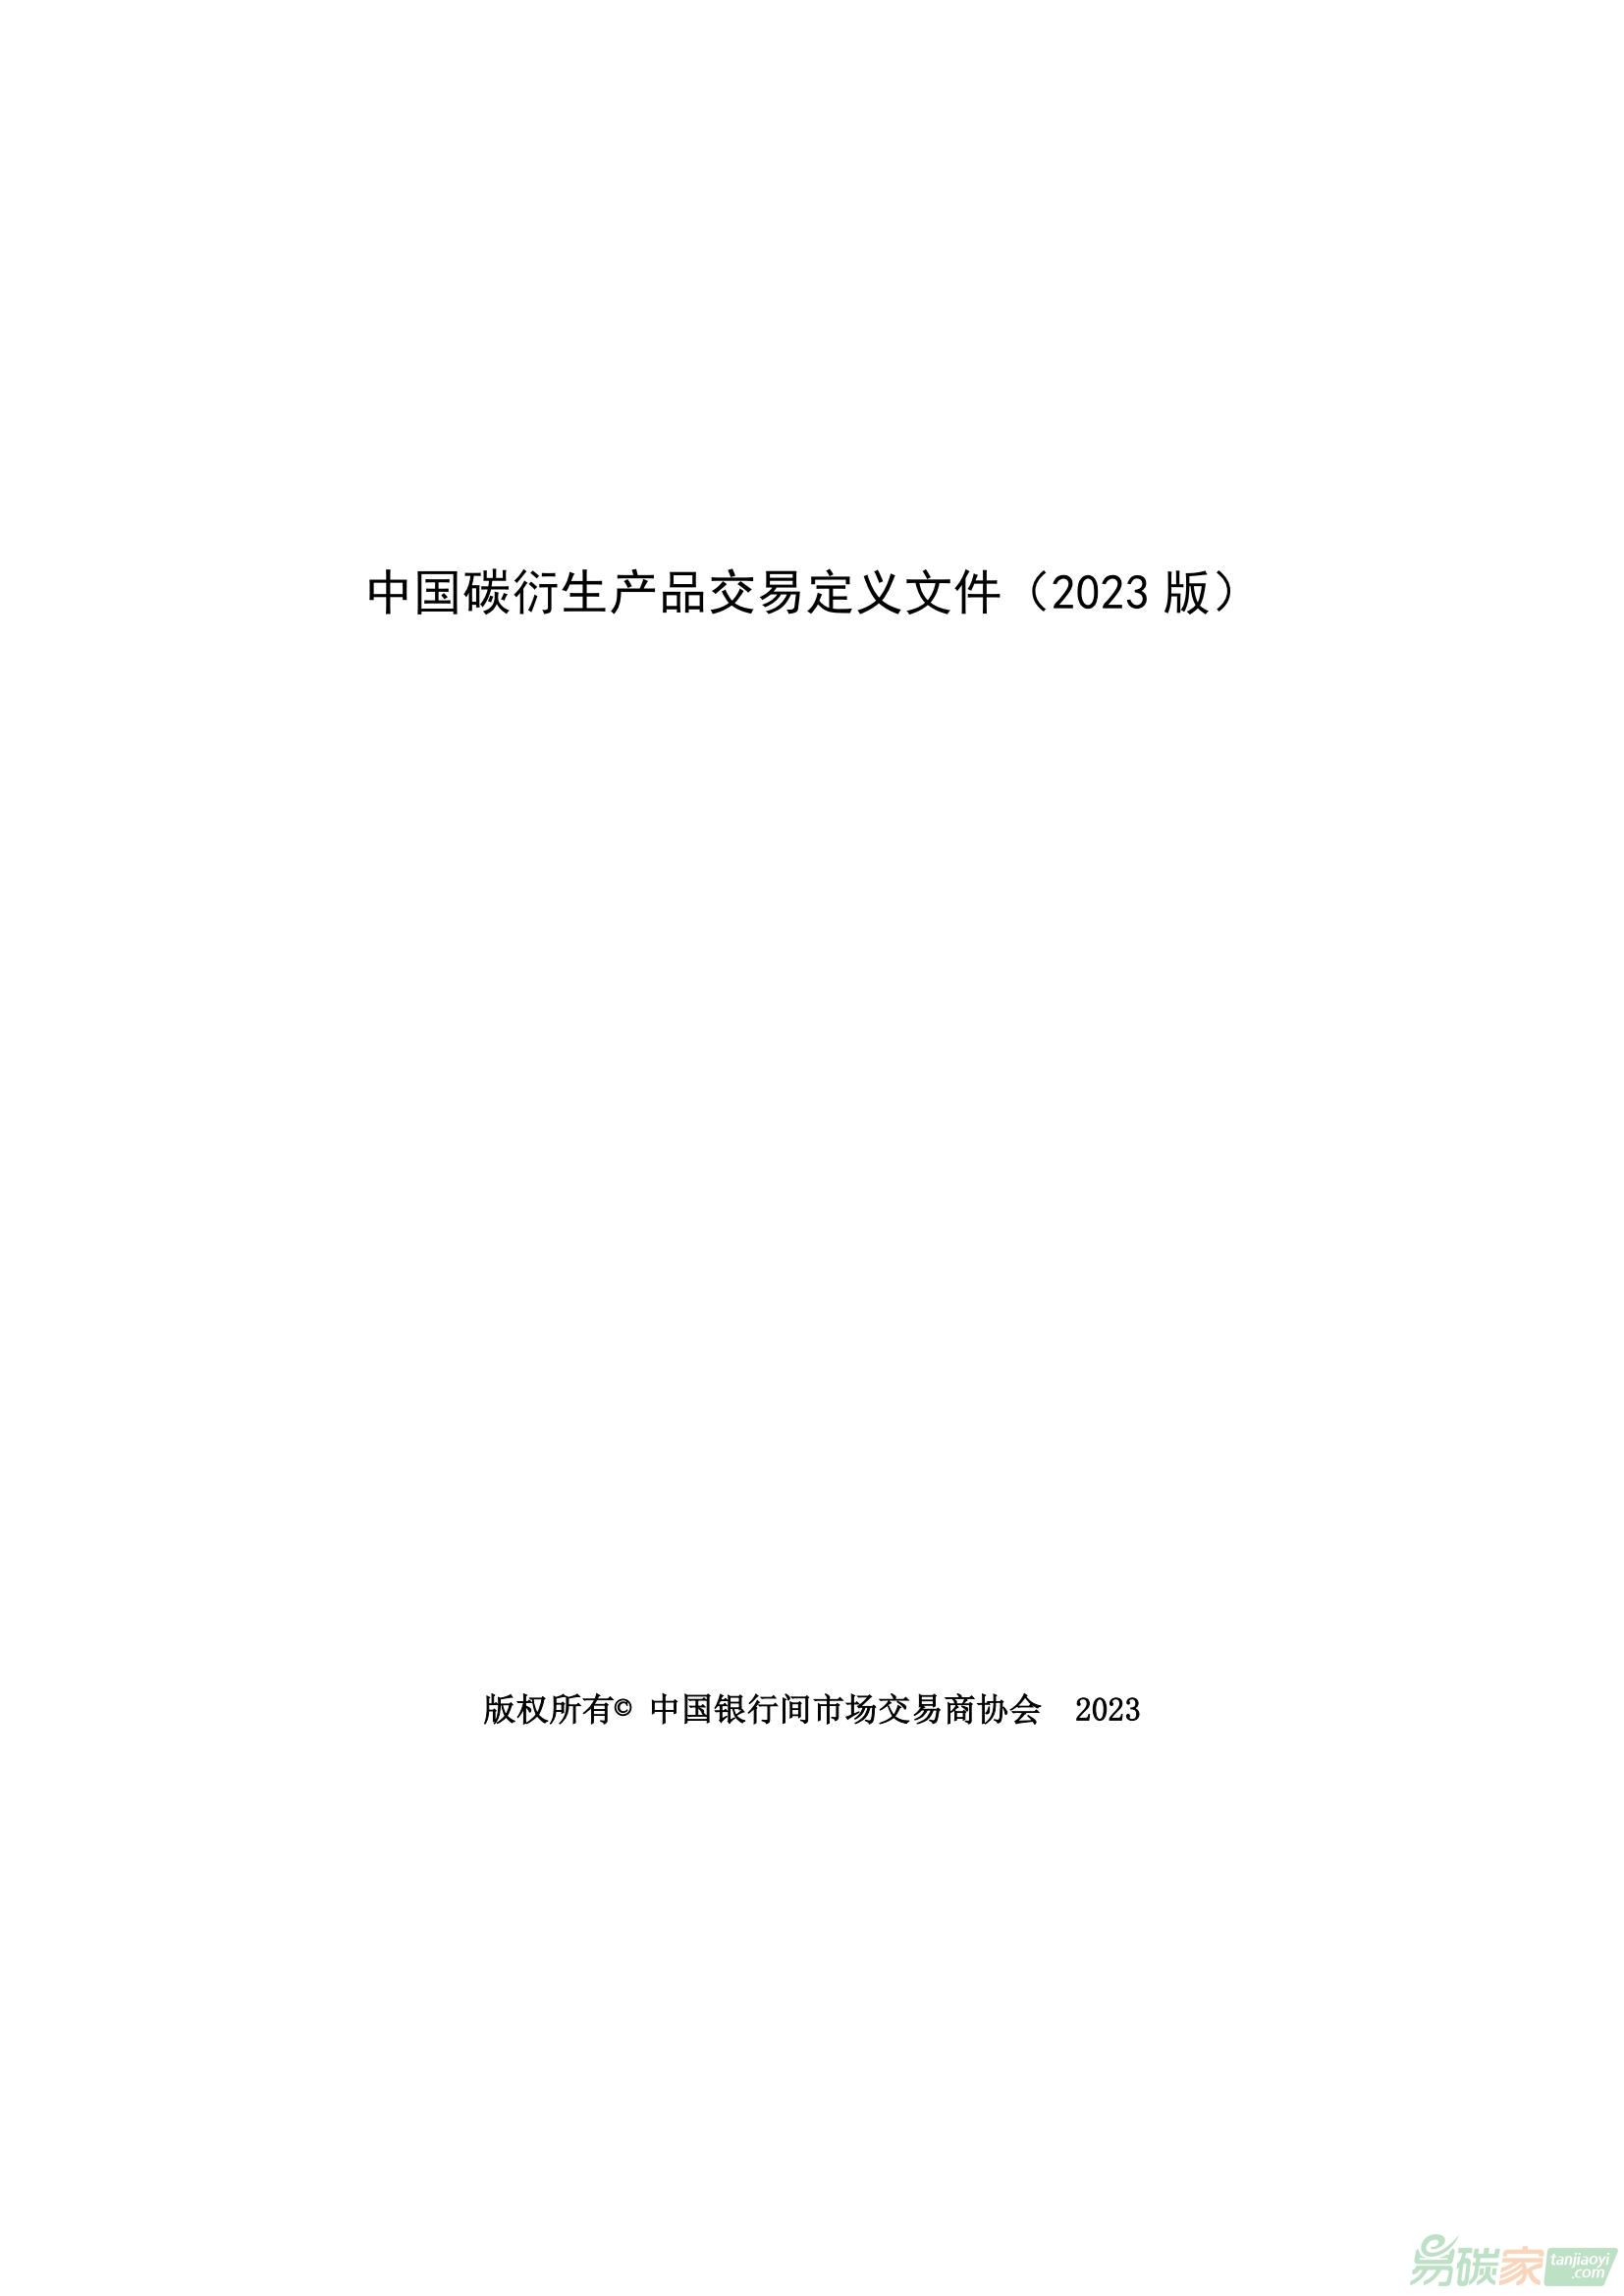 关于发布《中国碳衍生产品交易定义文件（2023年版）》的公告【〔2023〕25号】